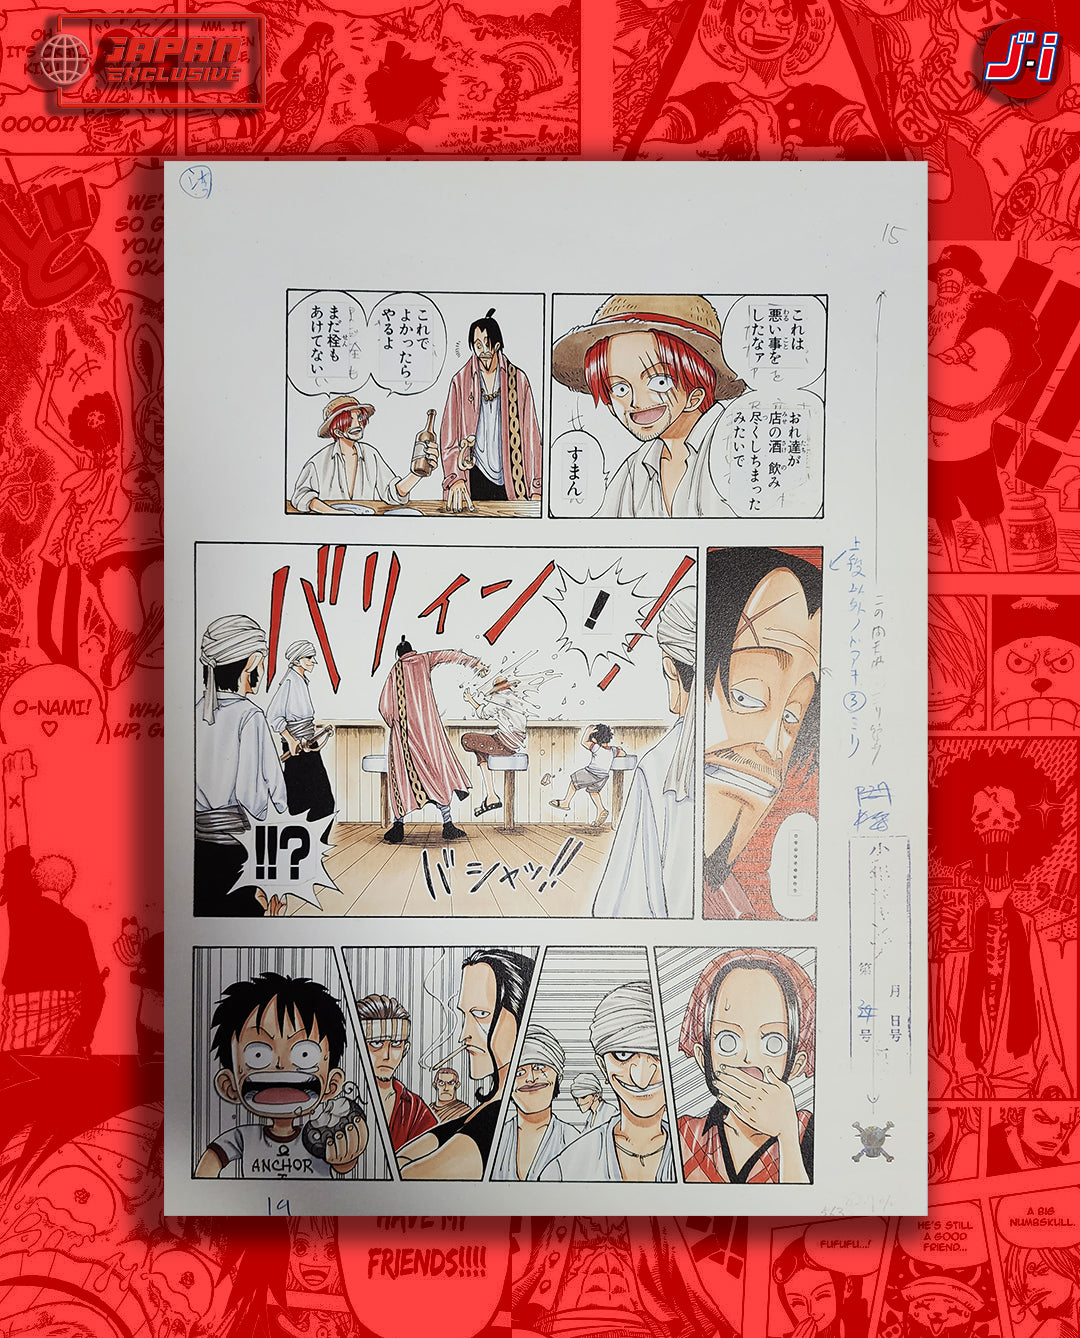 Romance Dawn: A CG Tribute to One Piece - One Piece